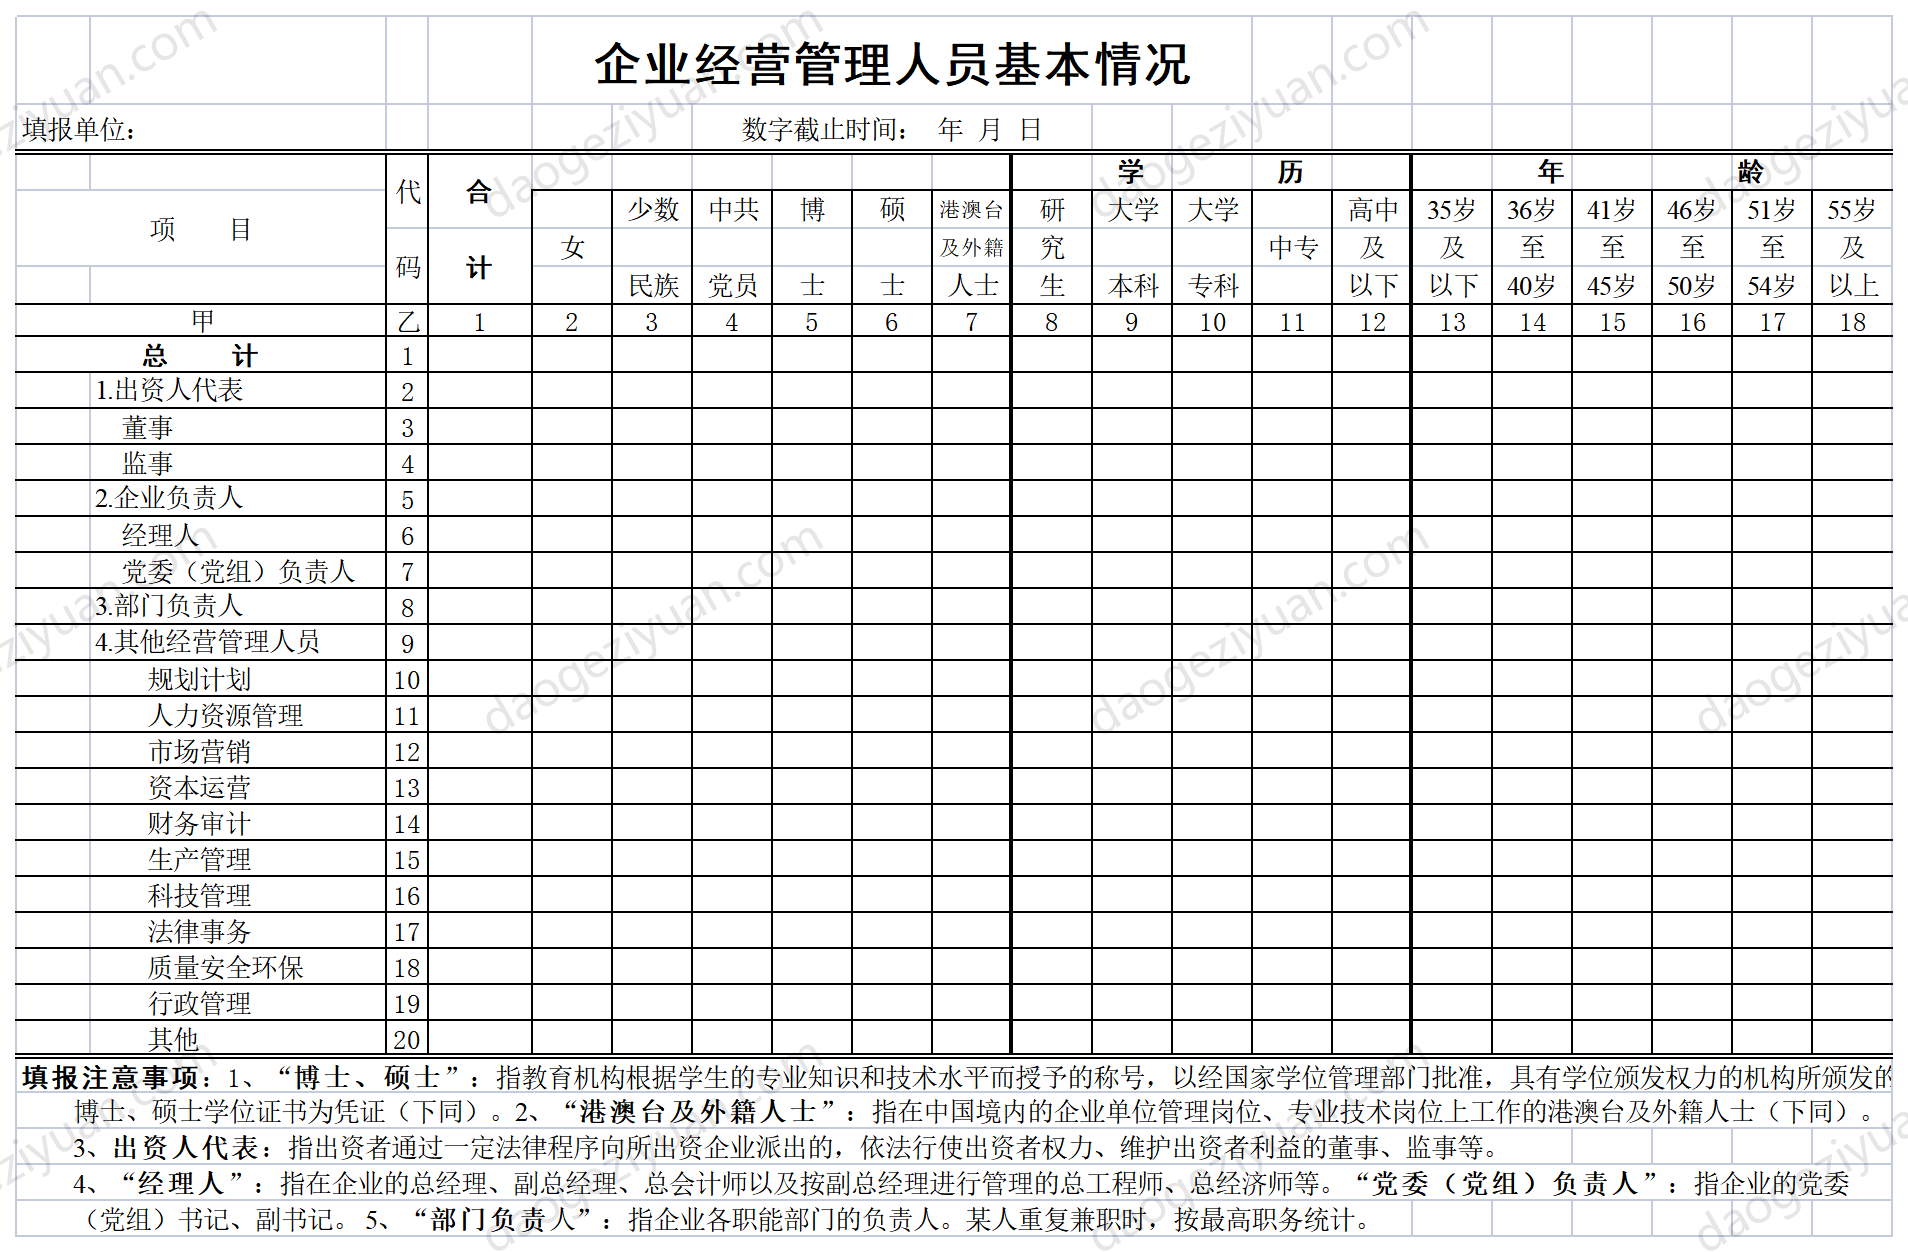 Basic information table of enterprise management personnel.xls